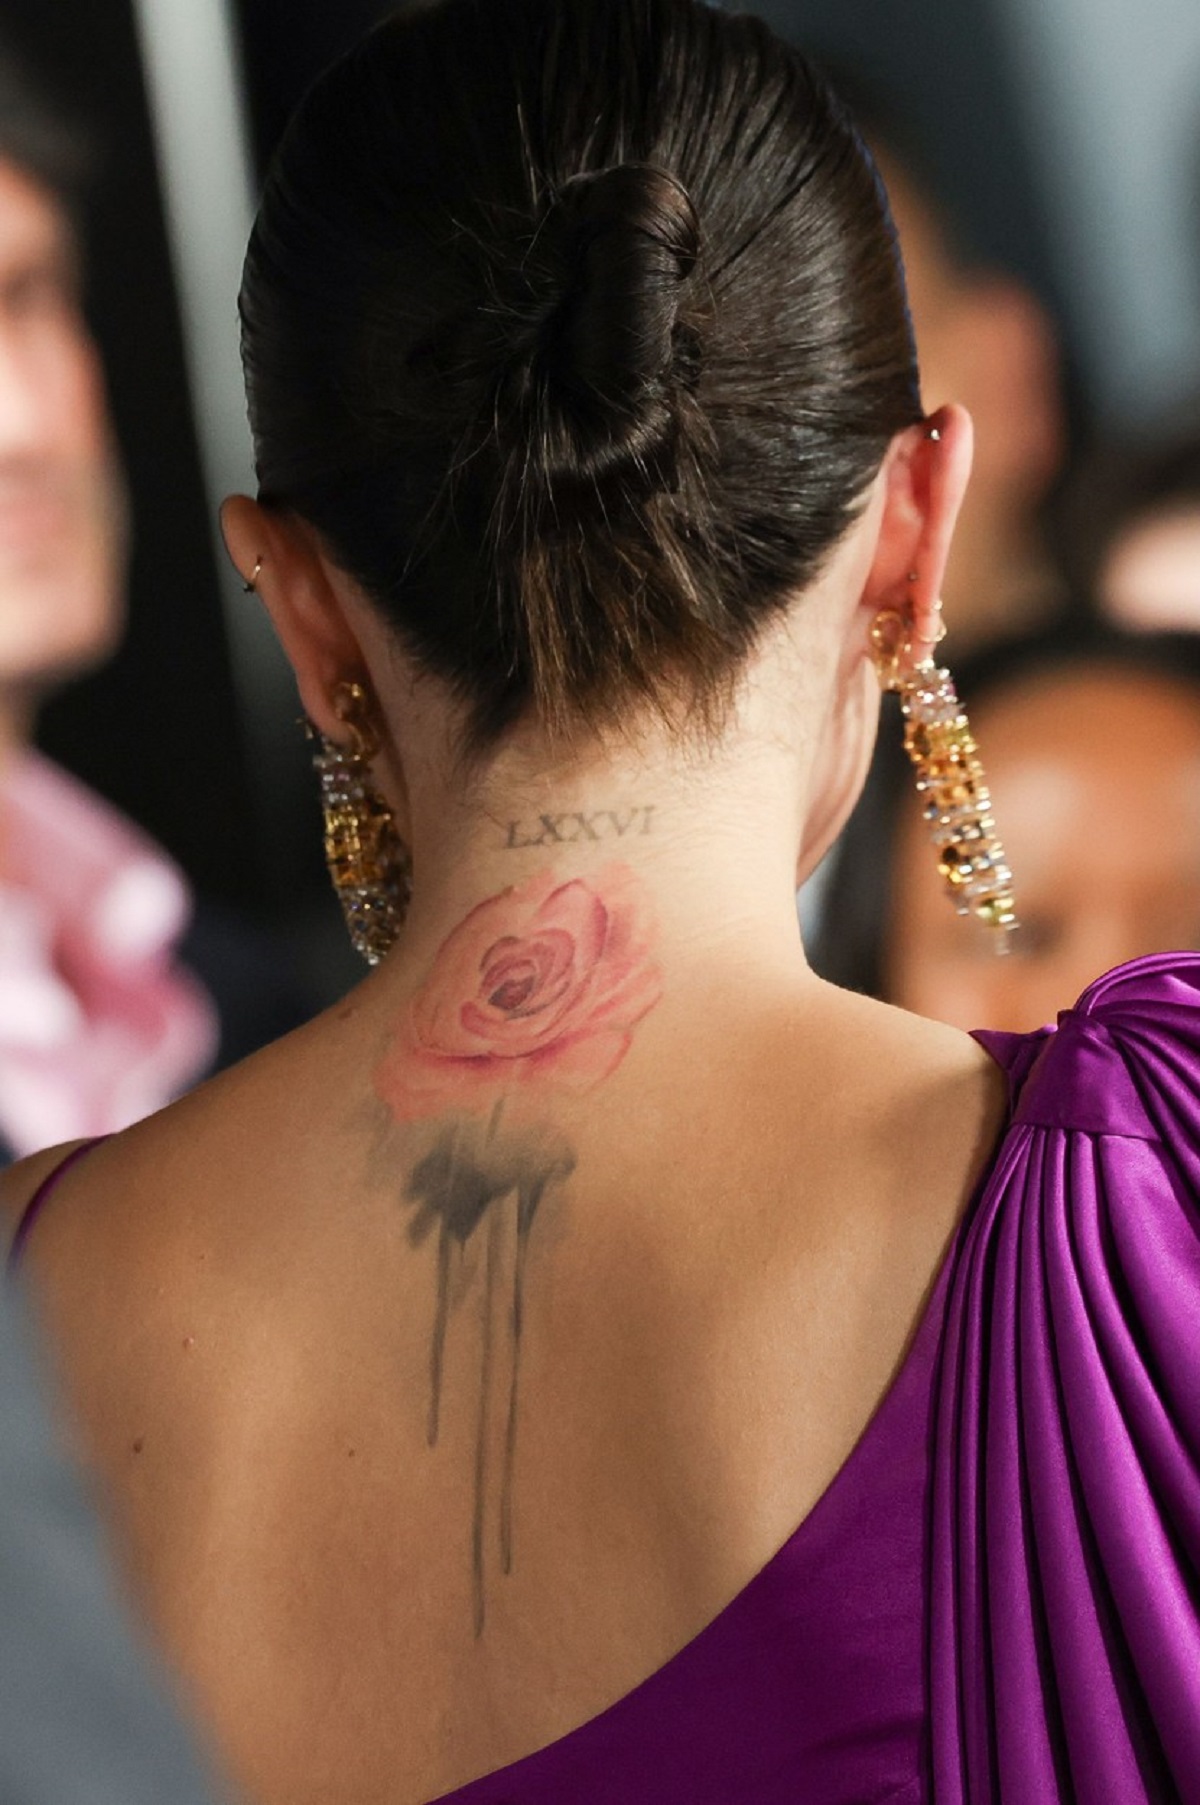 Fotografie cu spatele Selenei Gomez care își lasă la vedere tatuajul cu trandafir